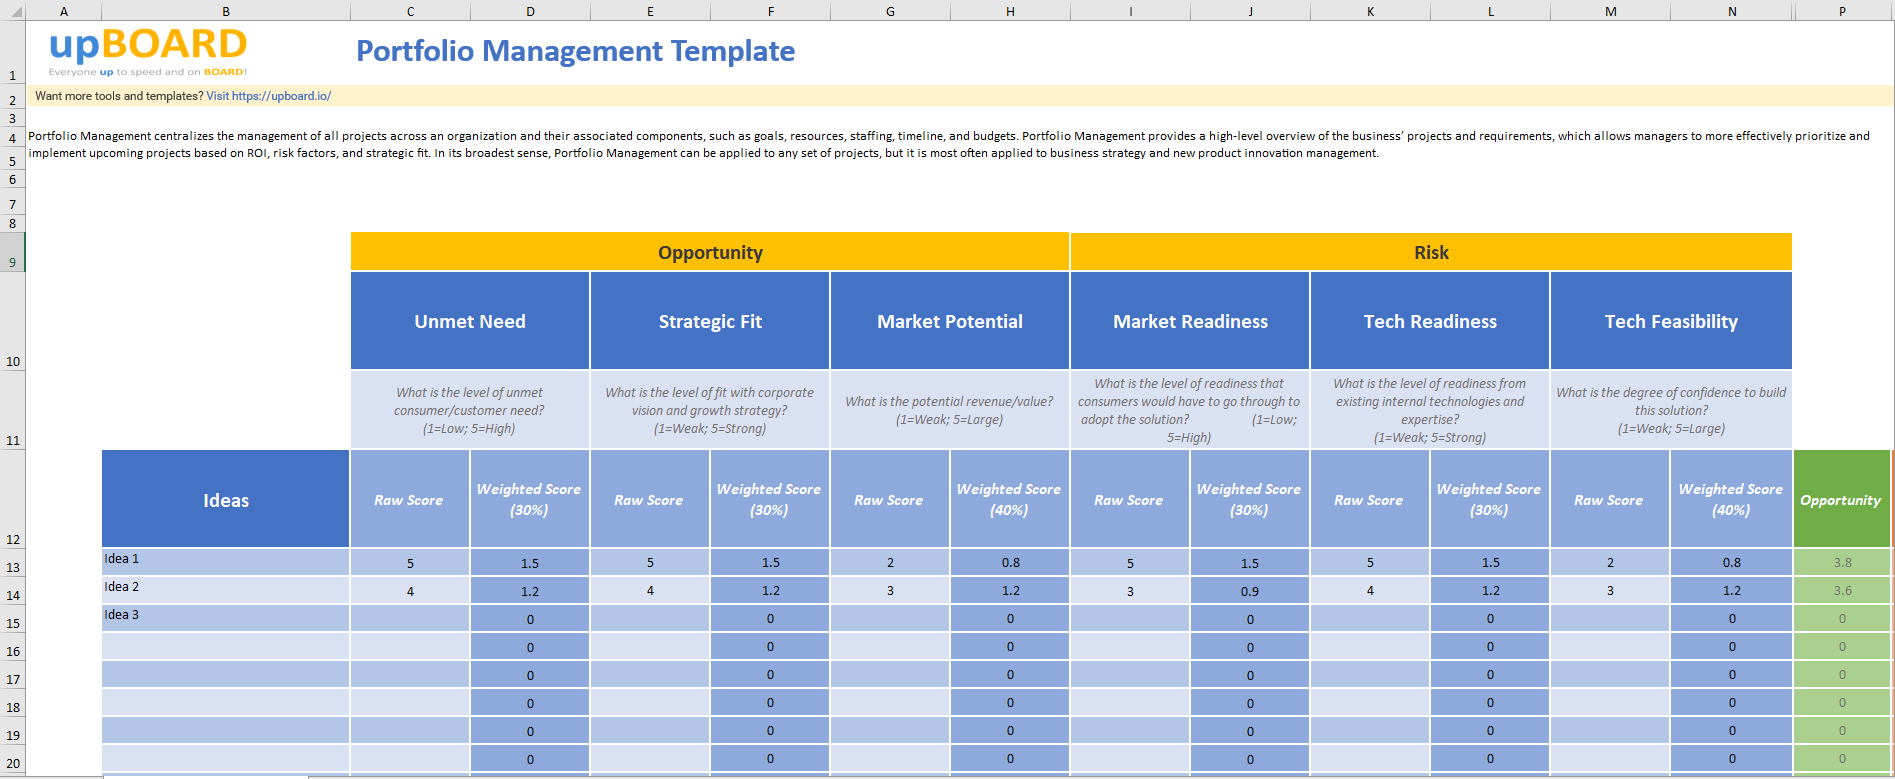 Portfolio Management Online Tools, Templates & Software Within Portfolio Management Reporting Templates